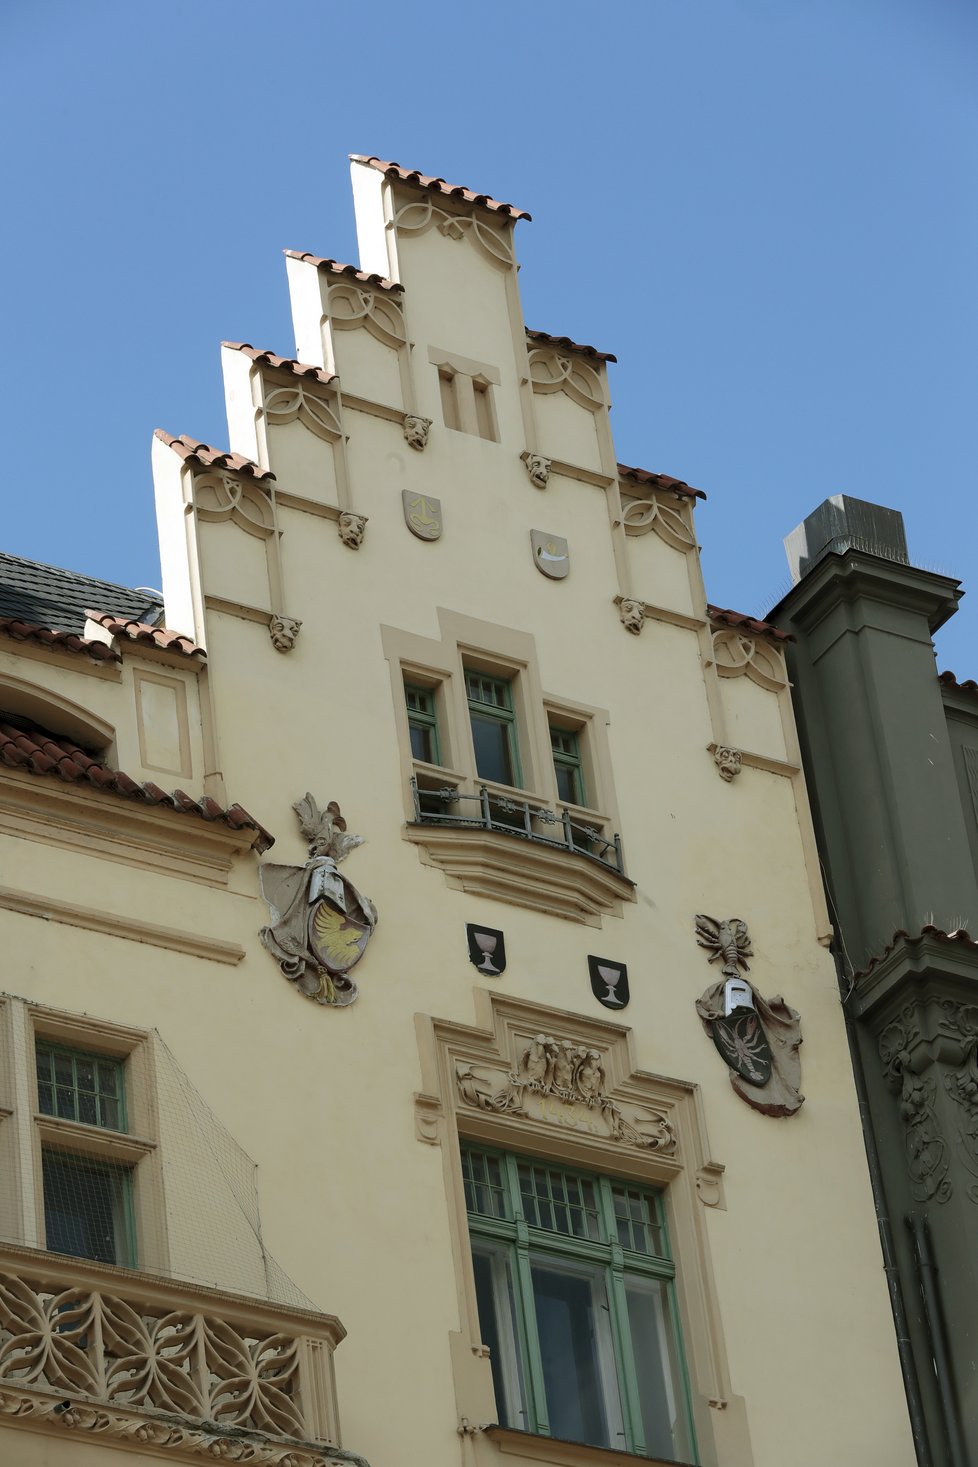 Dům navrhoval známý architekt Matěj Blecha, který má v Praze řadu jiných pozoruhodných staveb.